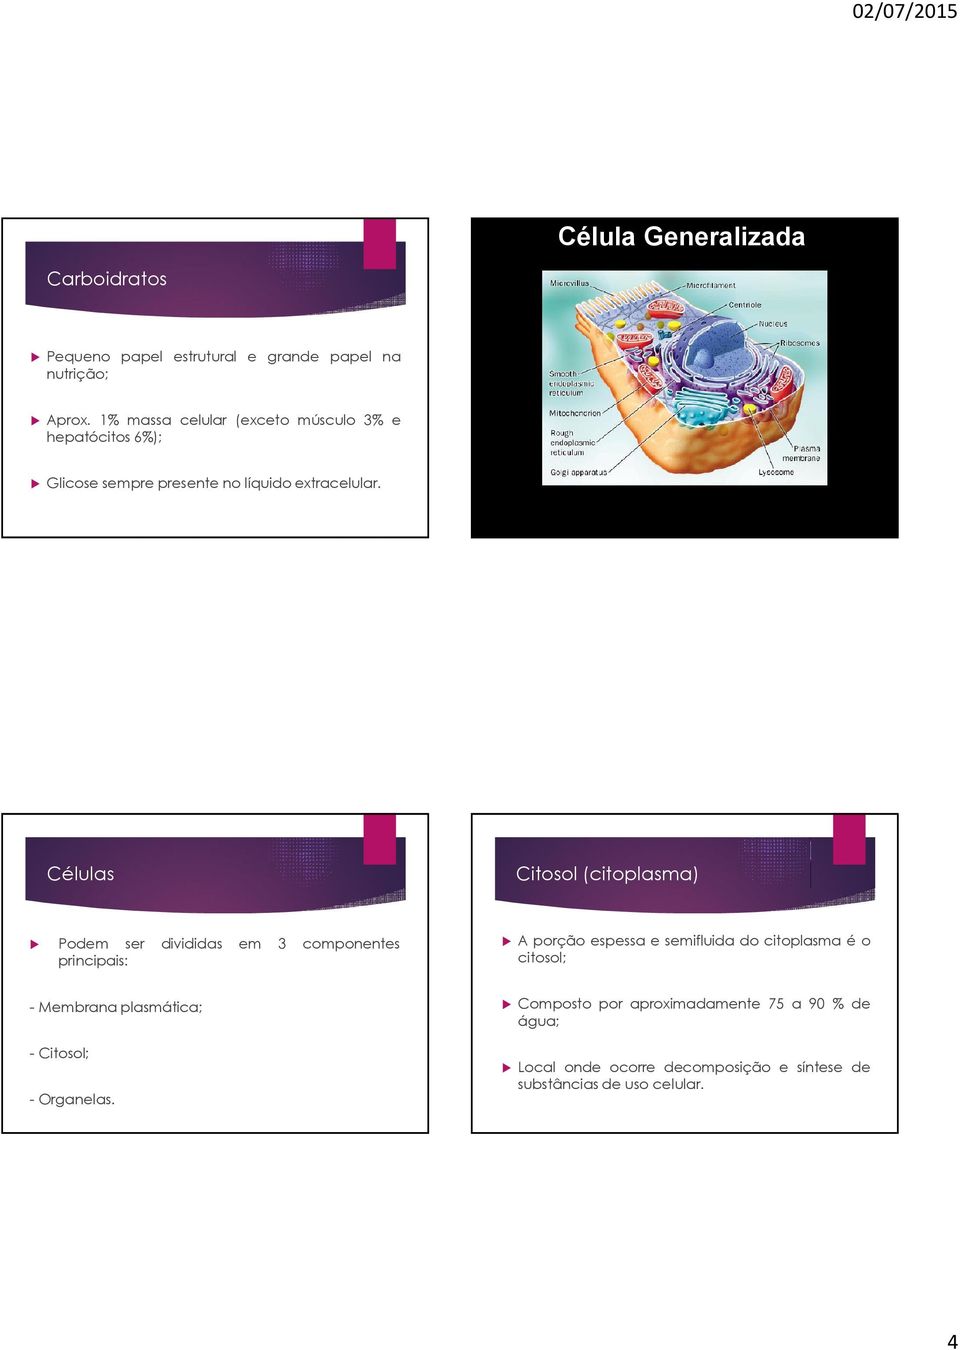 Células Citosol (citoplasma) Podem ser divididas em 3 componentes principais: A porção espessa e semifluida do citoplasma é